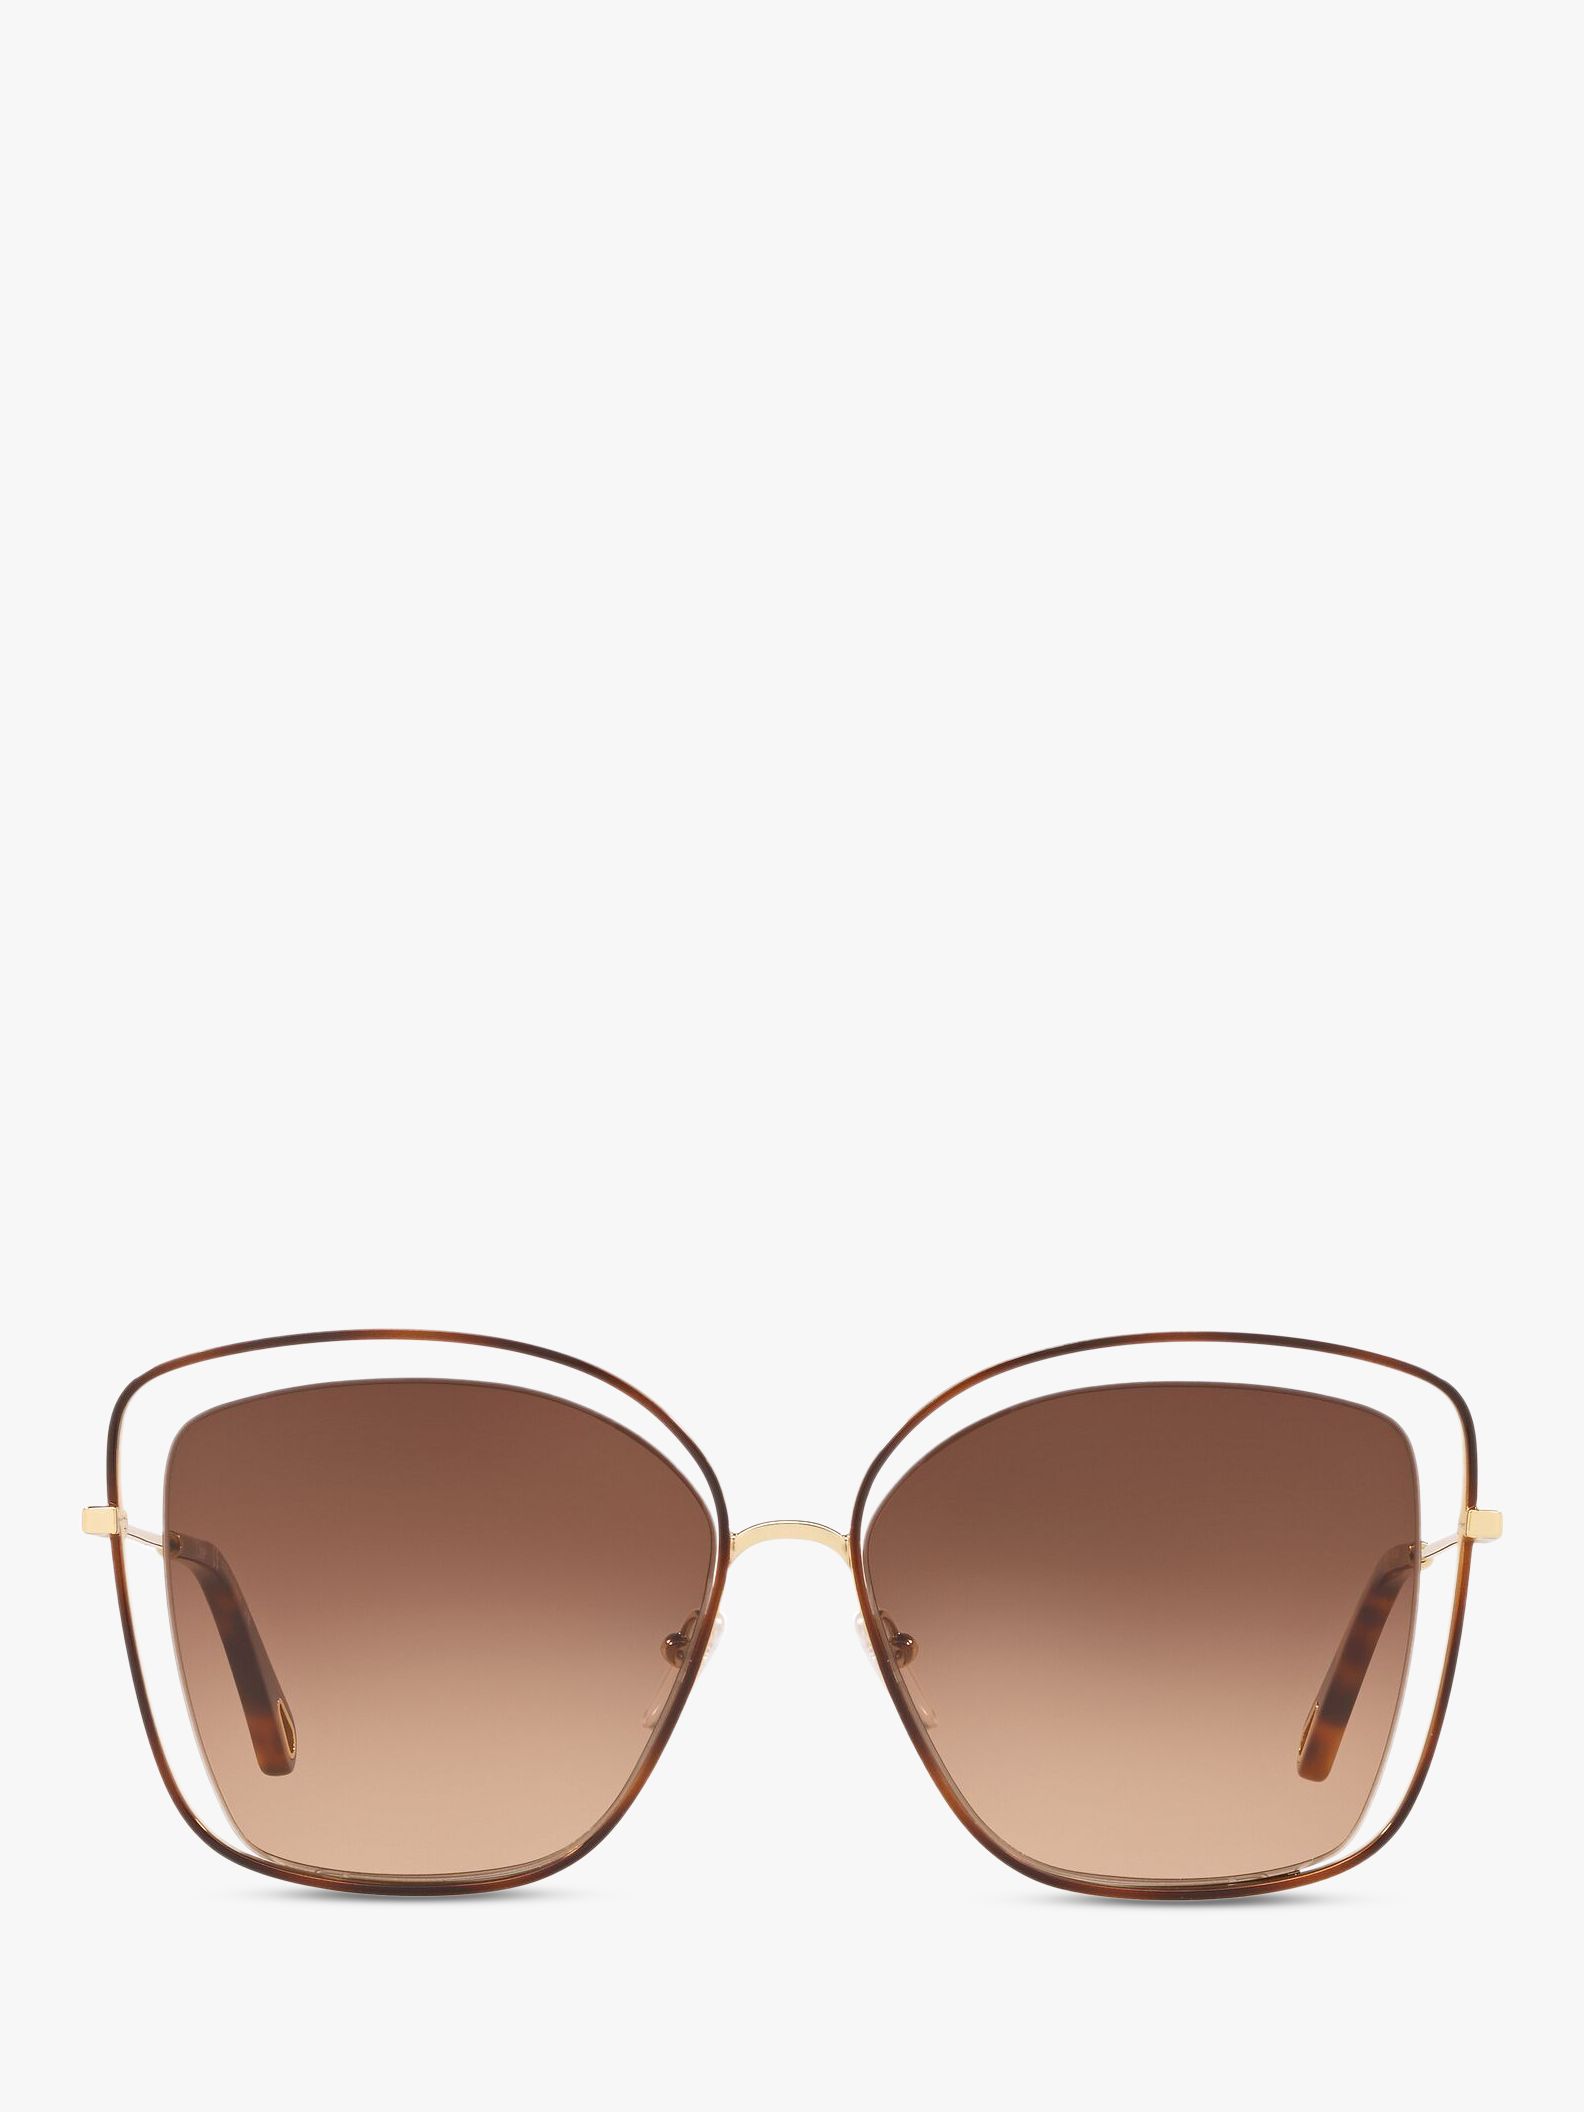 Buy Chloé CE133S Women's Double Rim Square Sunglasses Online at johnlewis.com